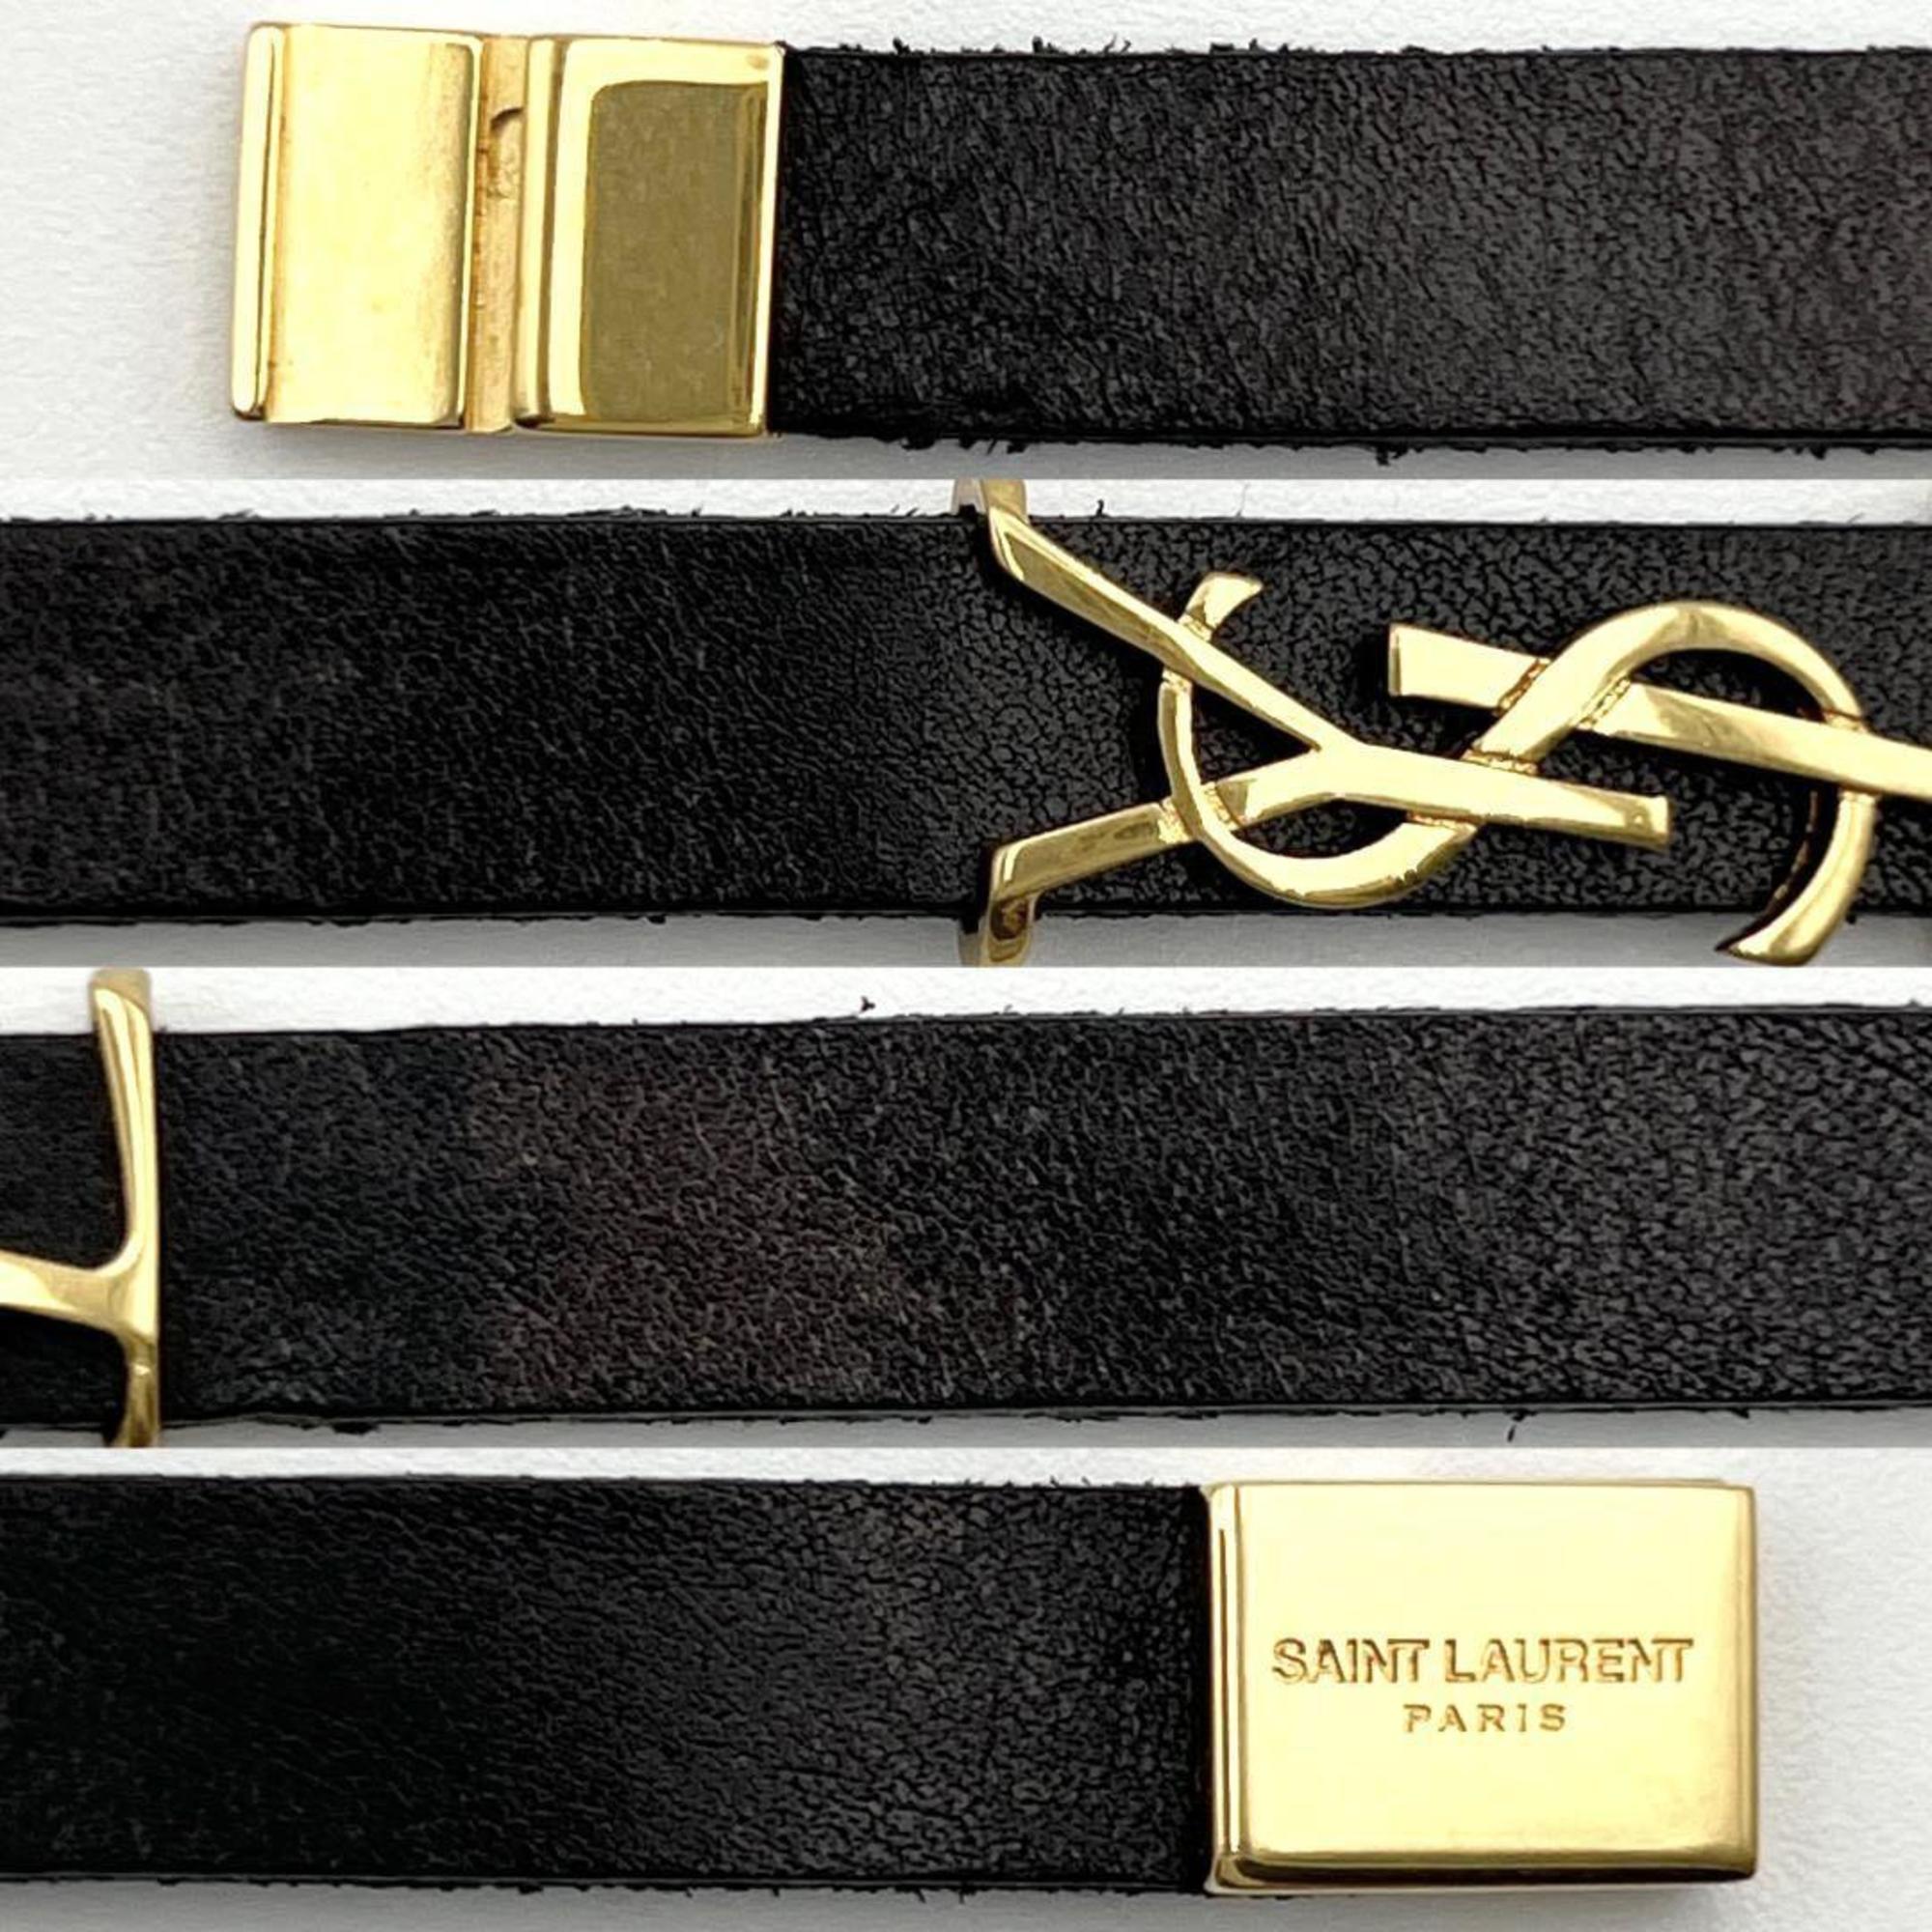 Yves Saint Laurent SAINT LAURENT Men's and Women's Bracelets, Bangles, Leather